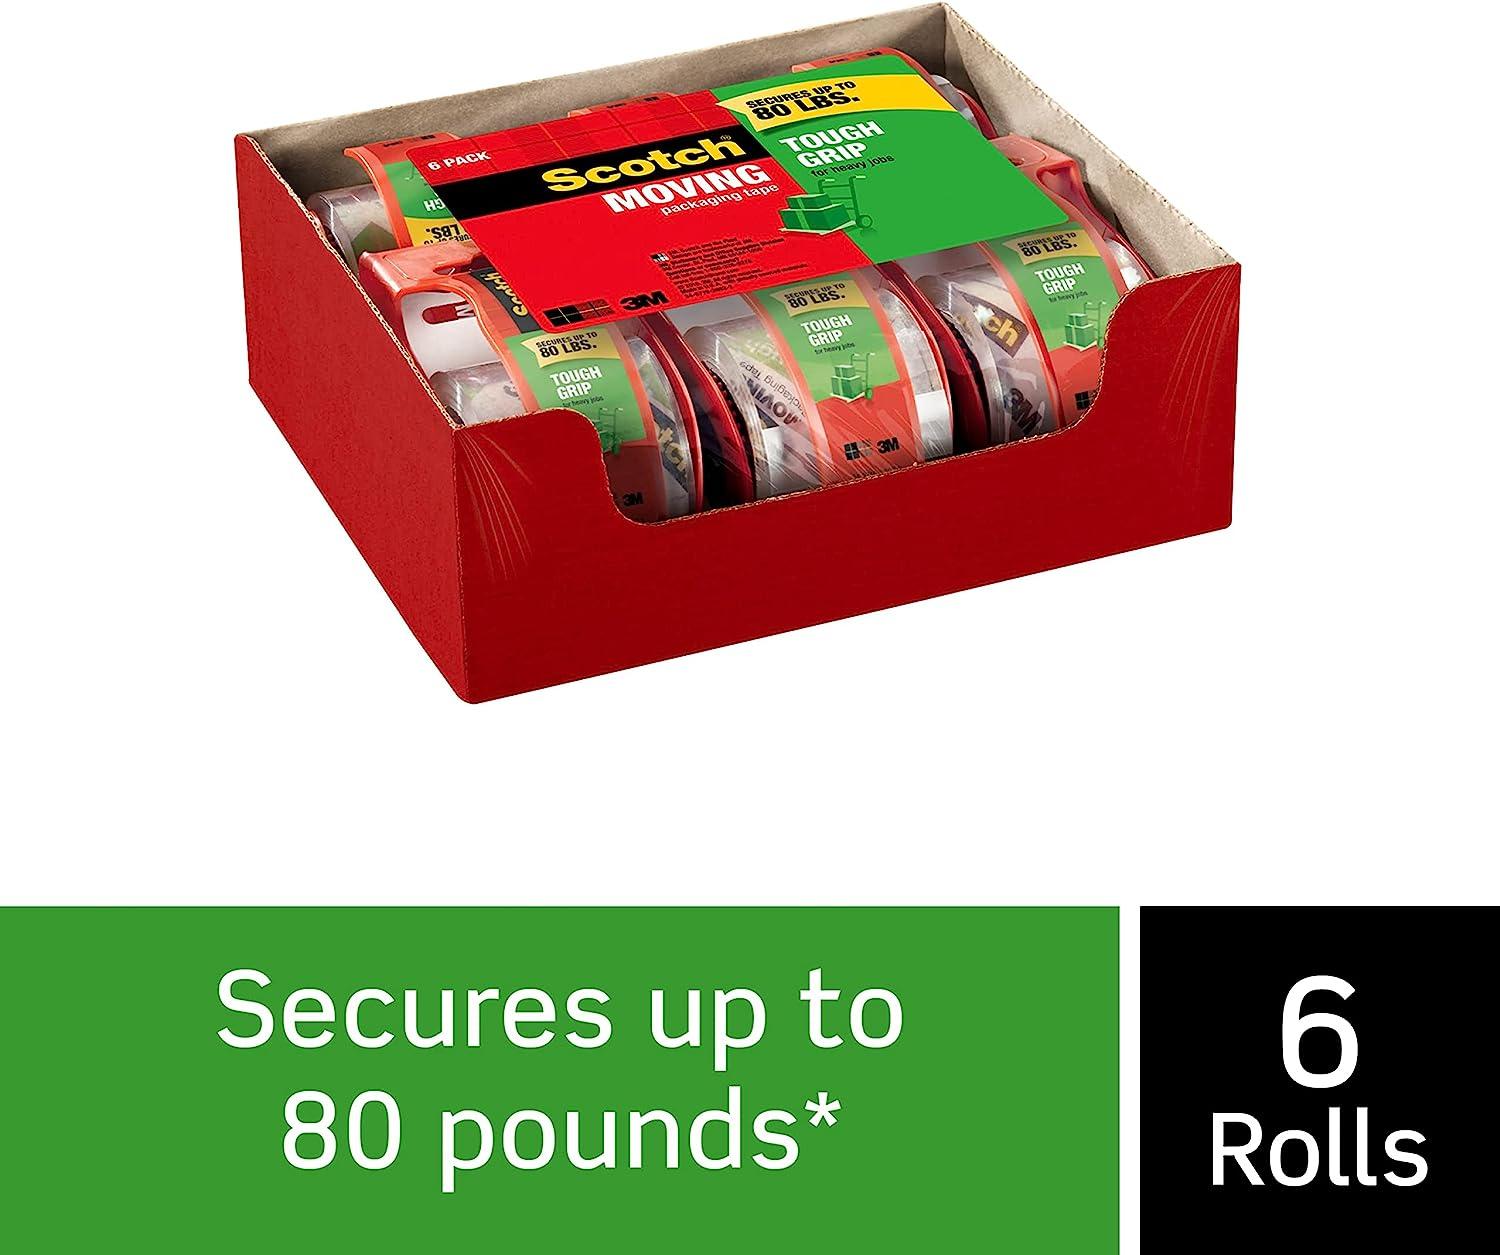 3M Scotch Super Strength Sure Start/Packaging Tape - 6 rolls, 22.2 yds each